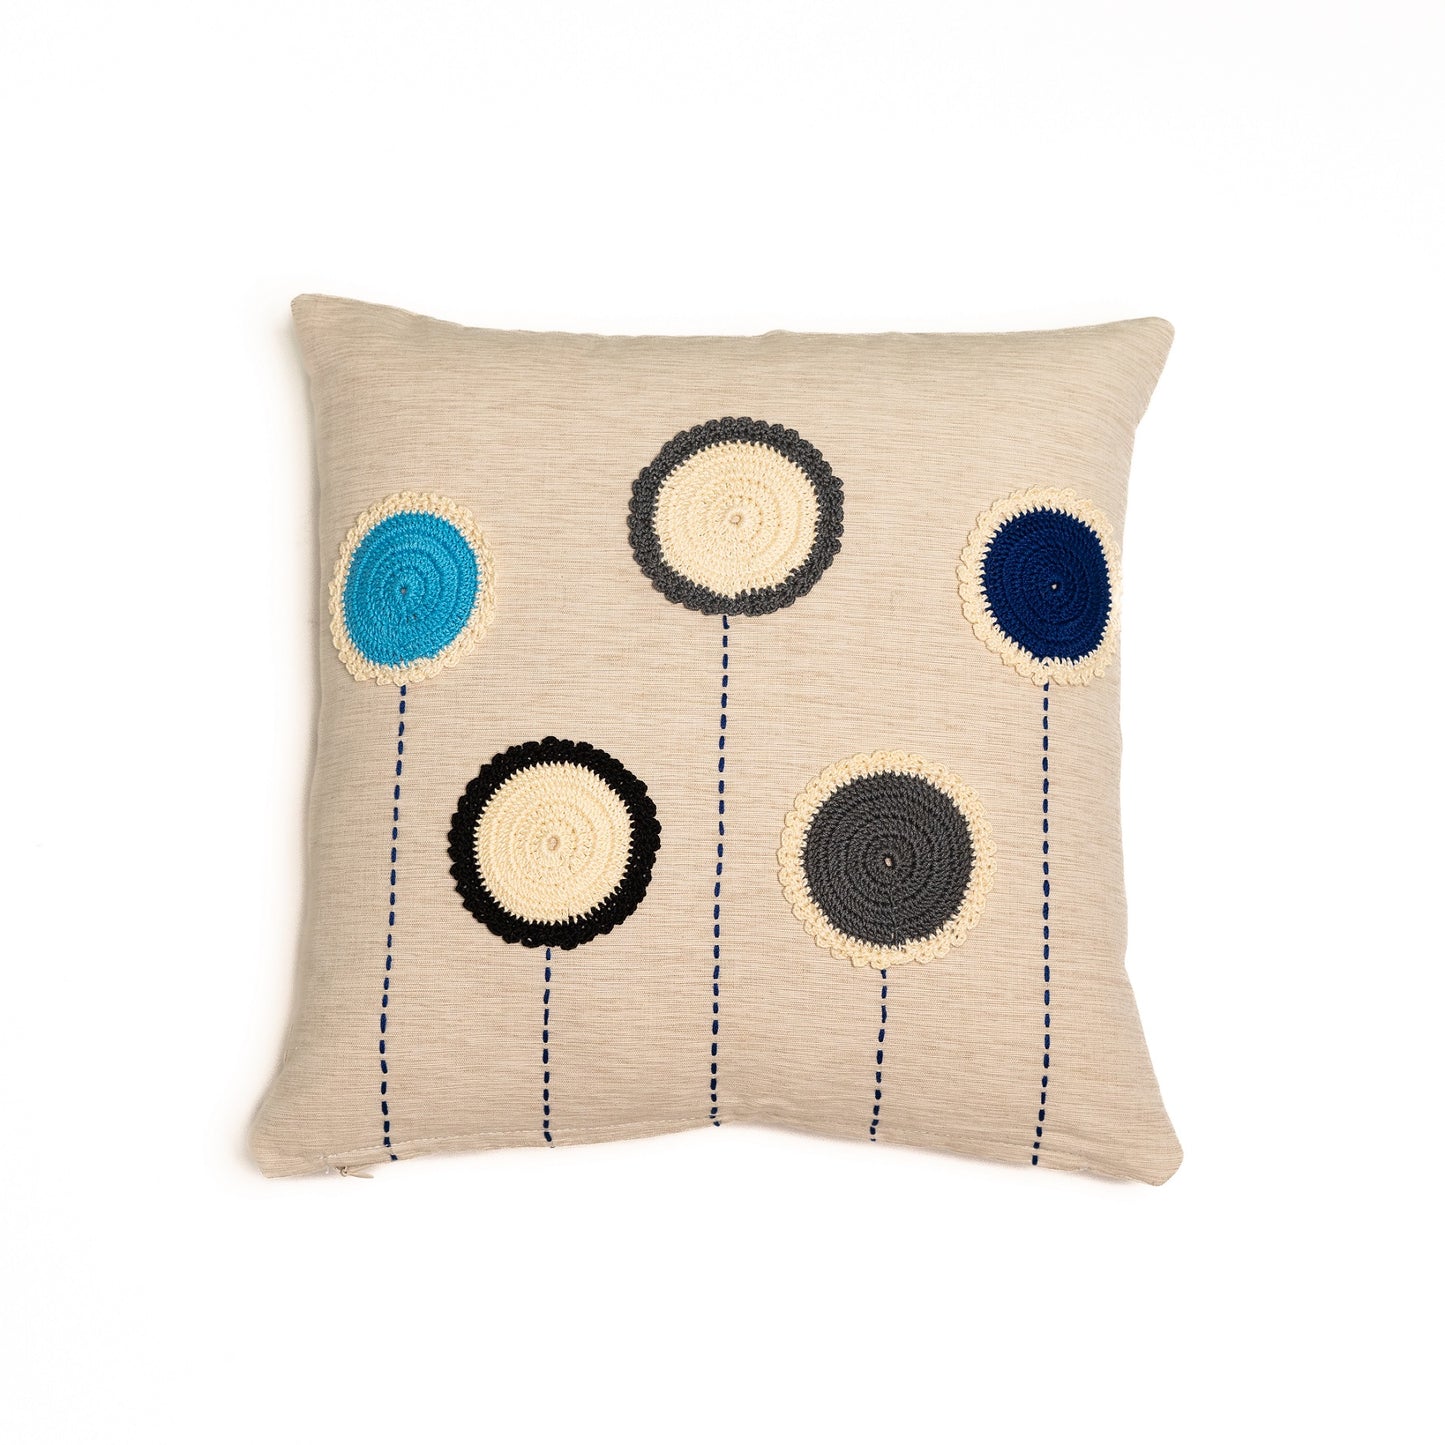 Crochet circles cushion cover (Blue) - Beige